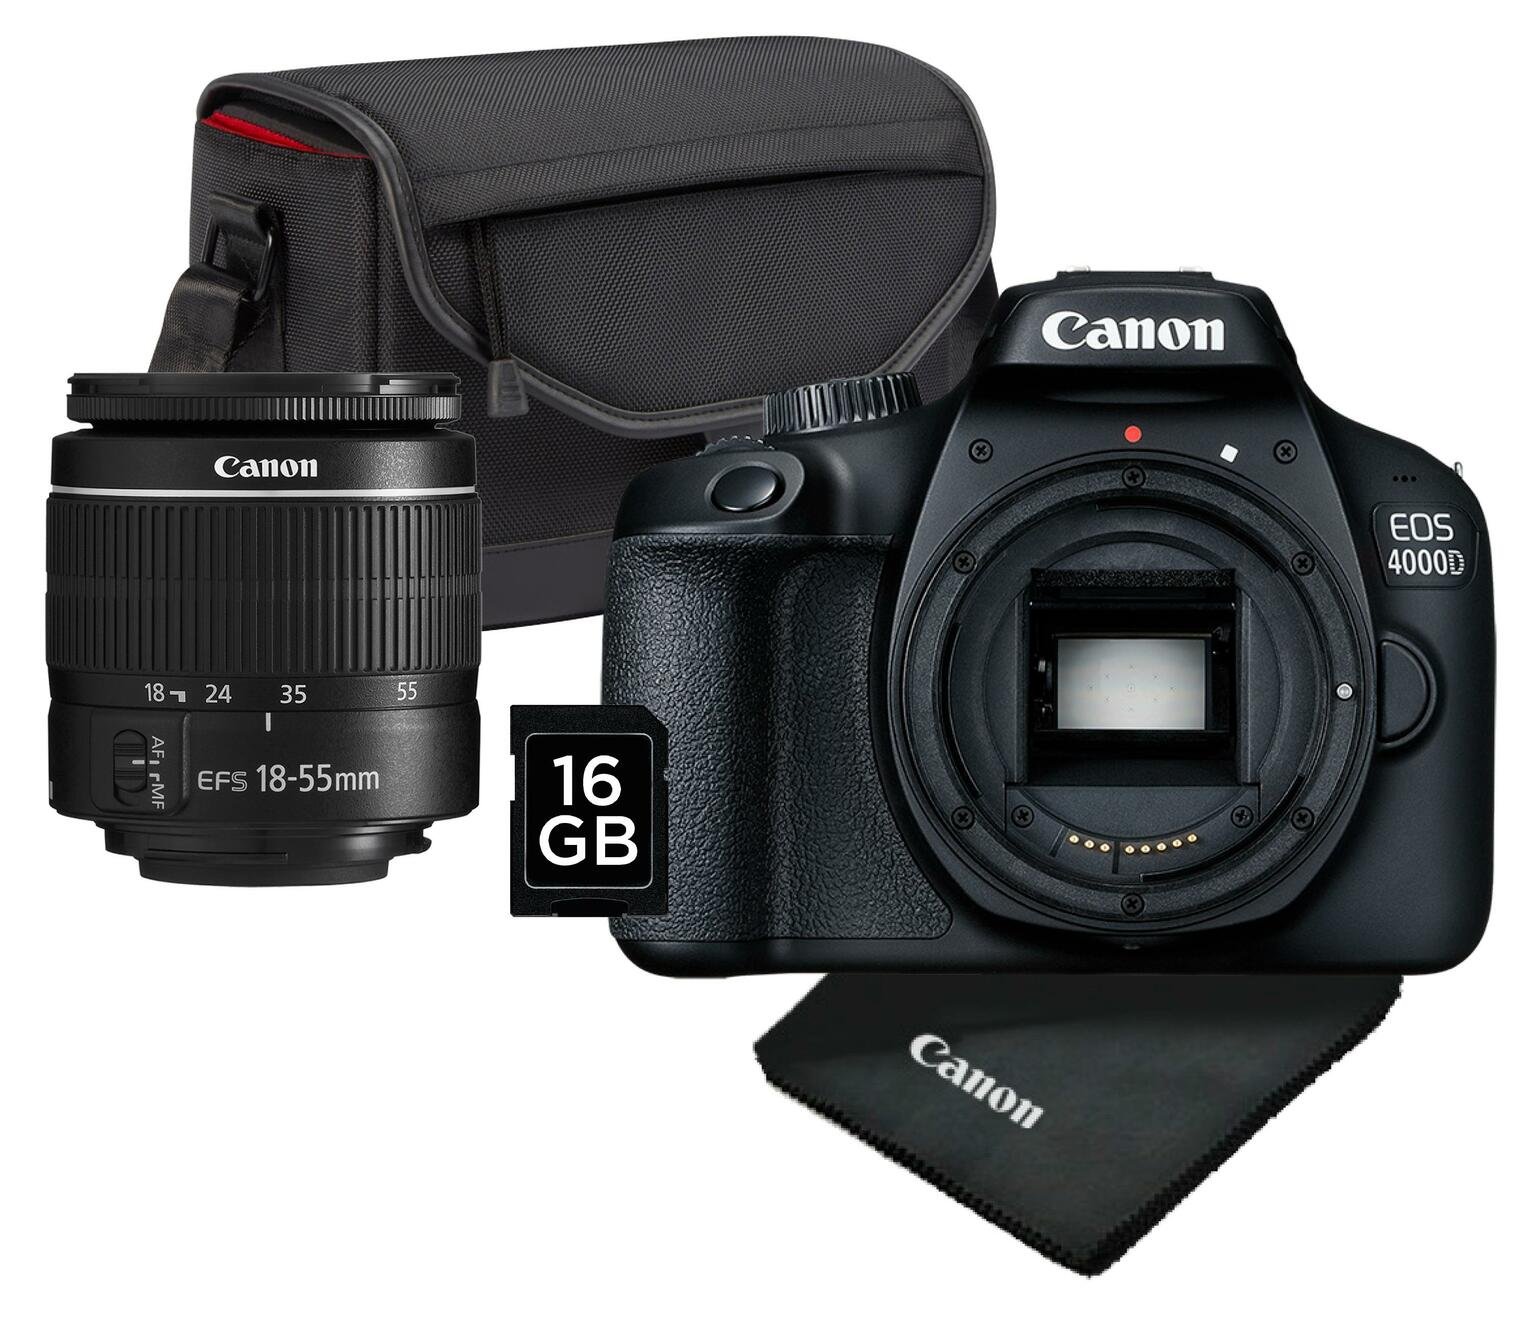 Canon EOS 4000D DSLR Kit Review